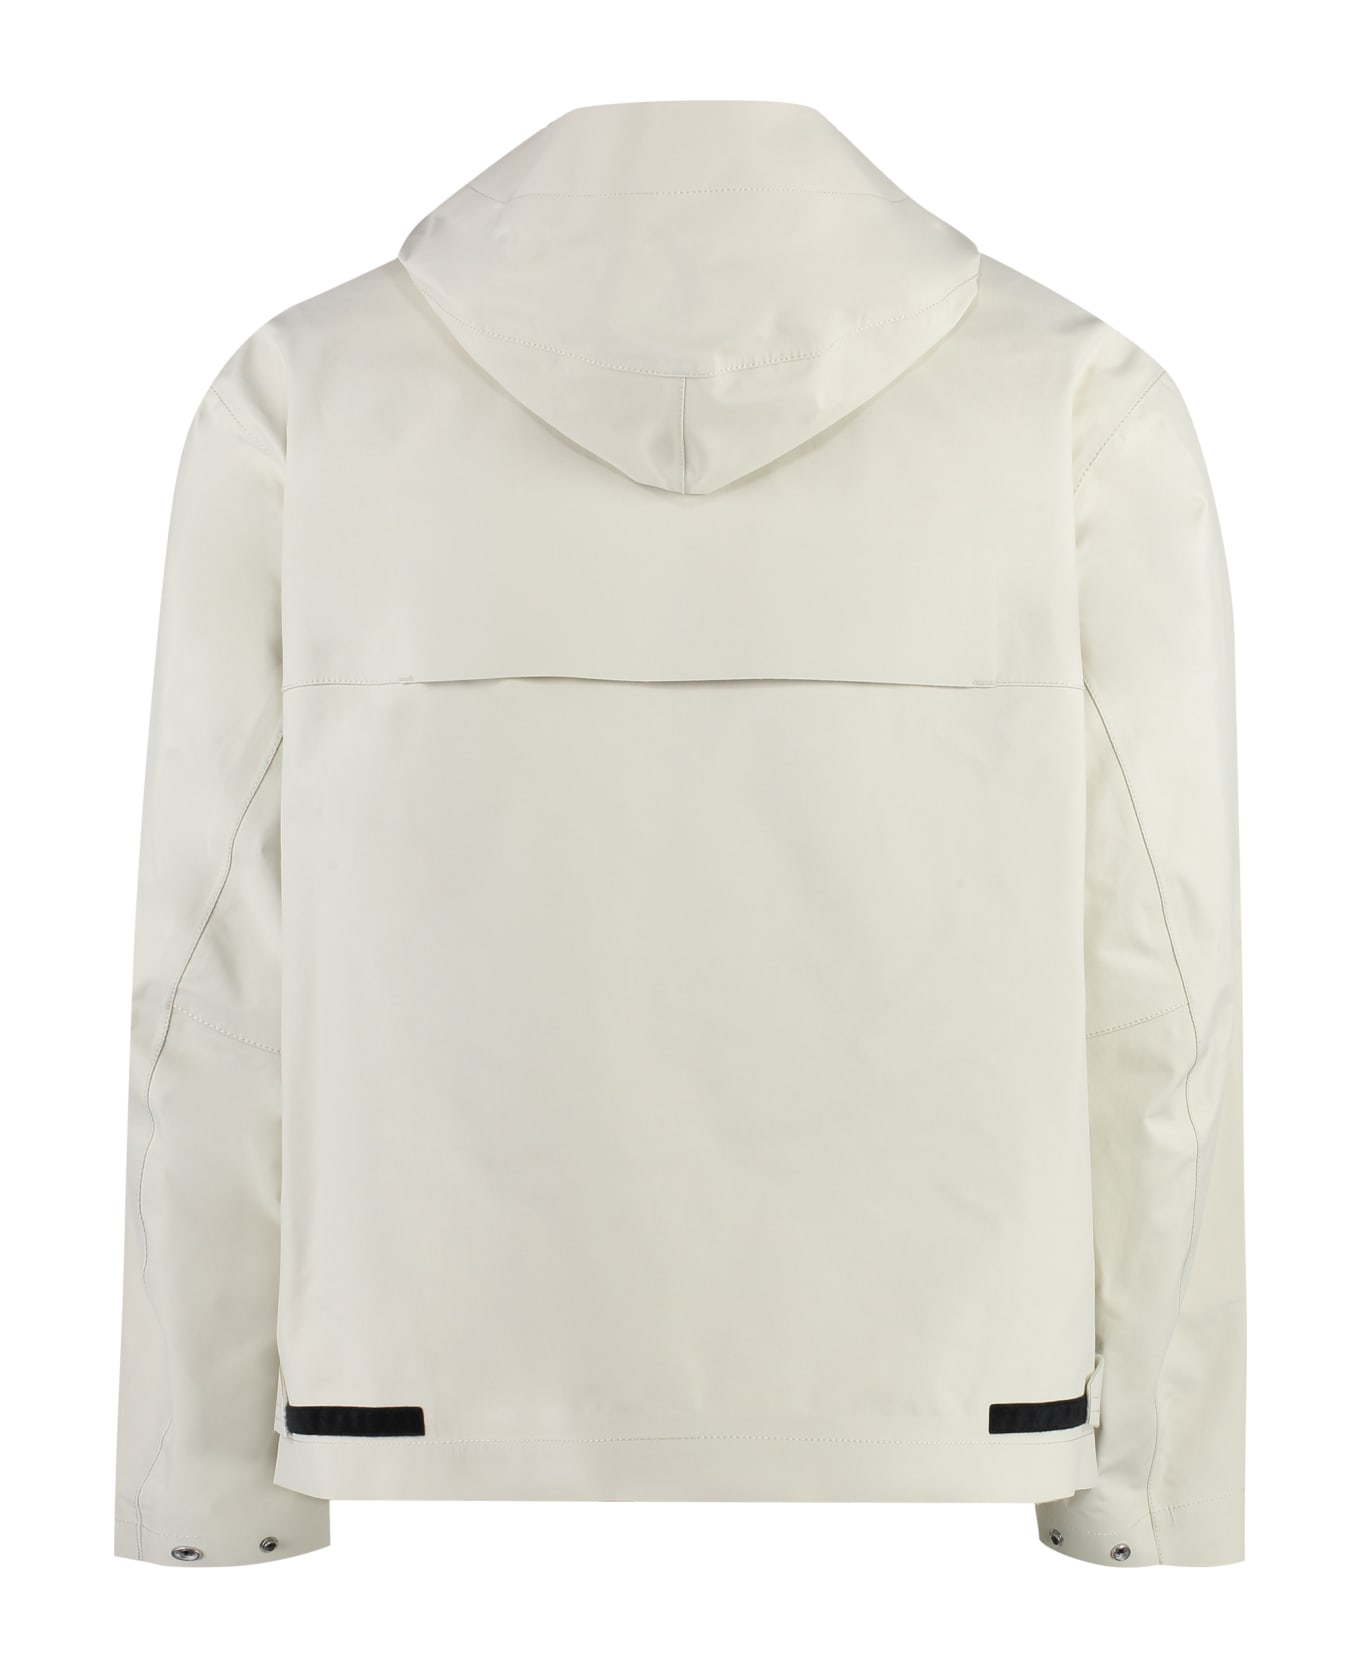 Stone Island Technical Fabric Hooded Jacket - Ivory レインコート